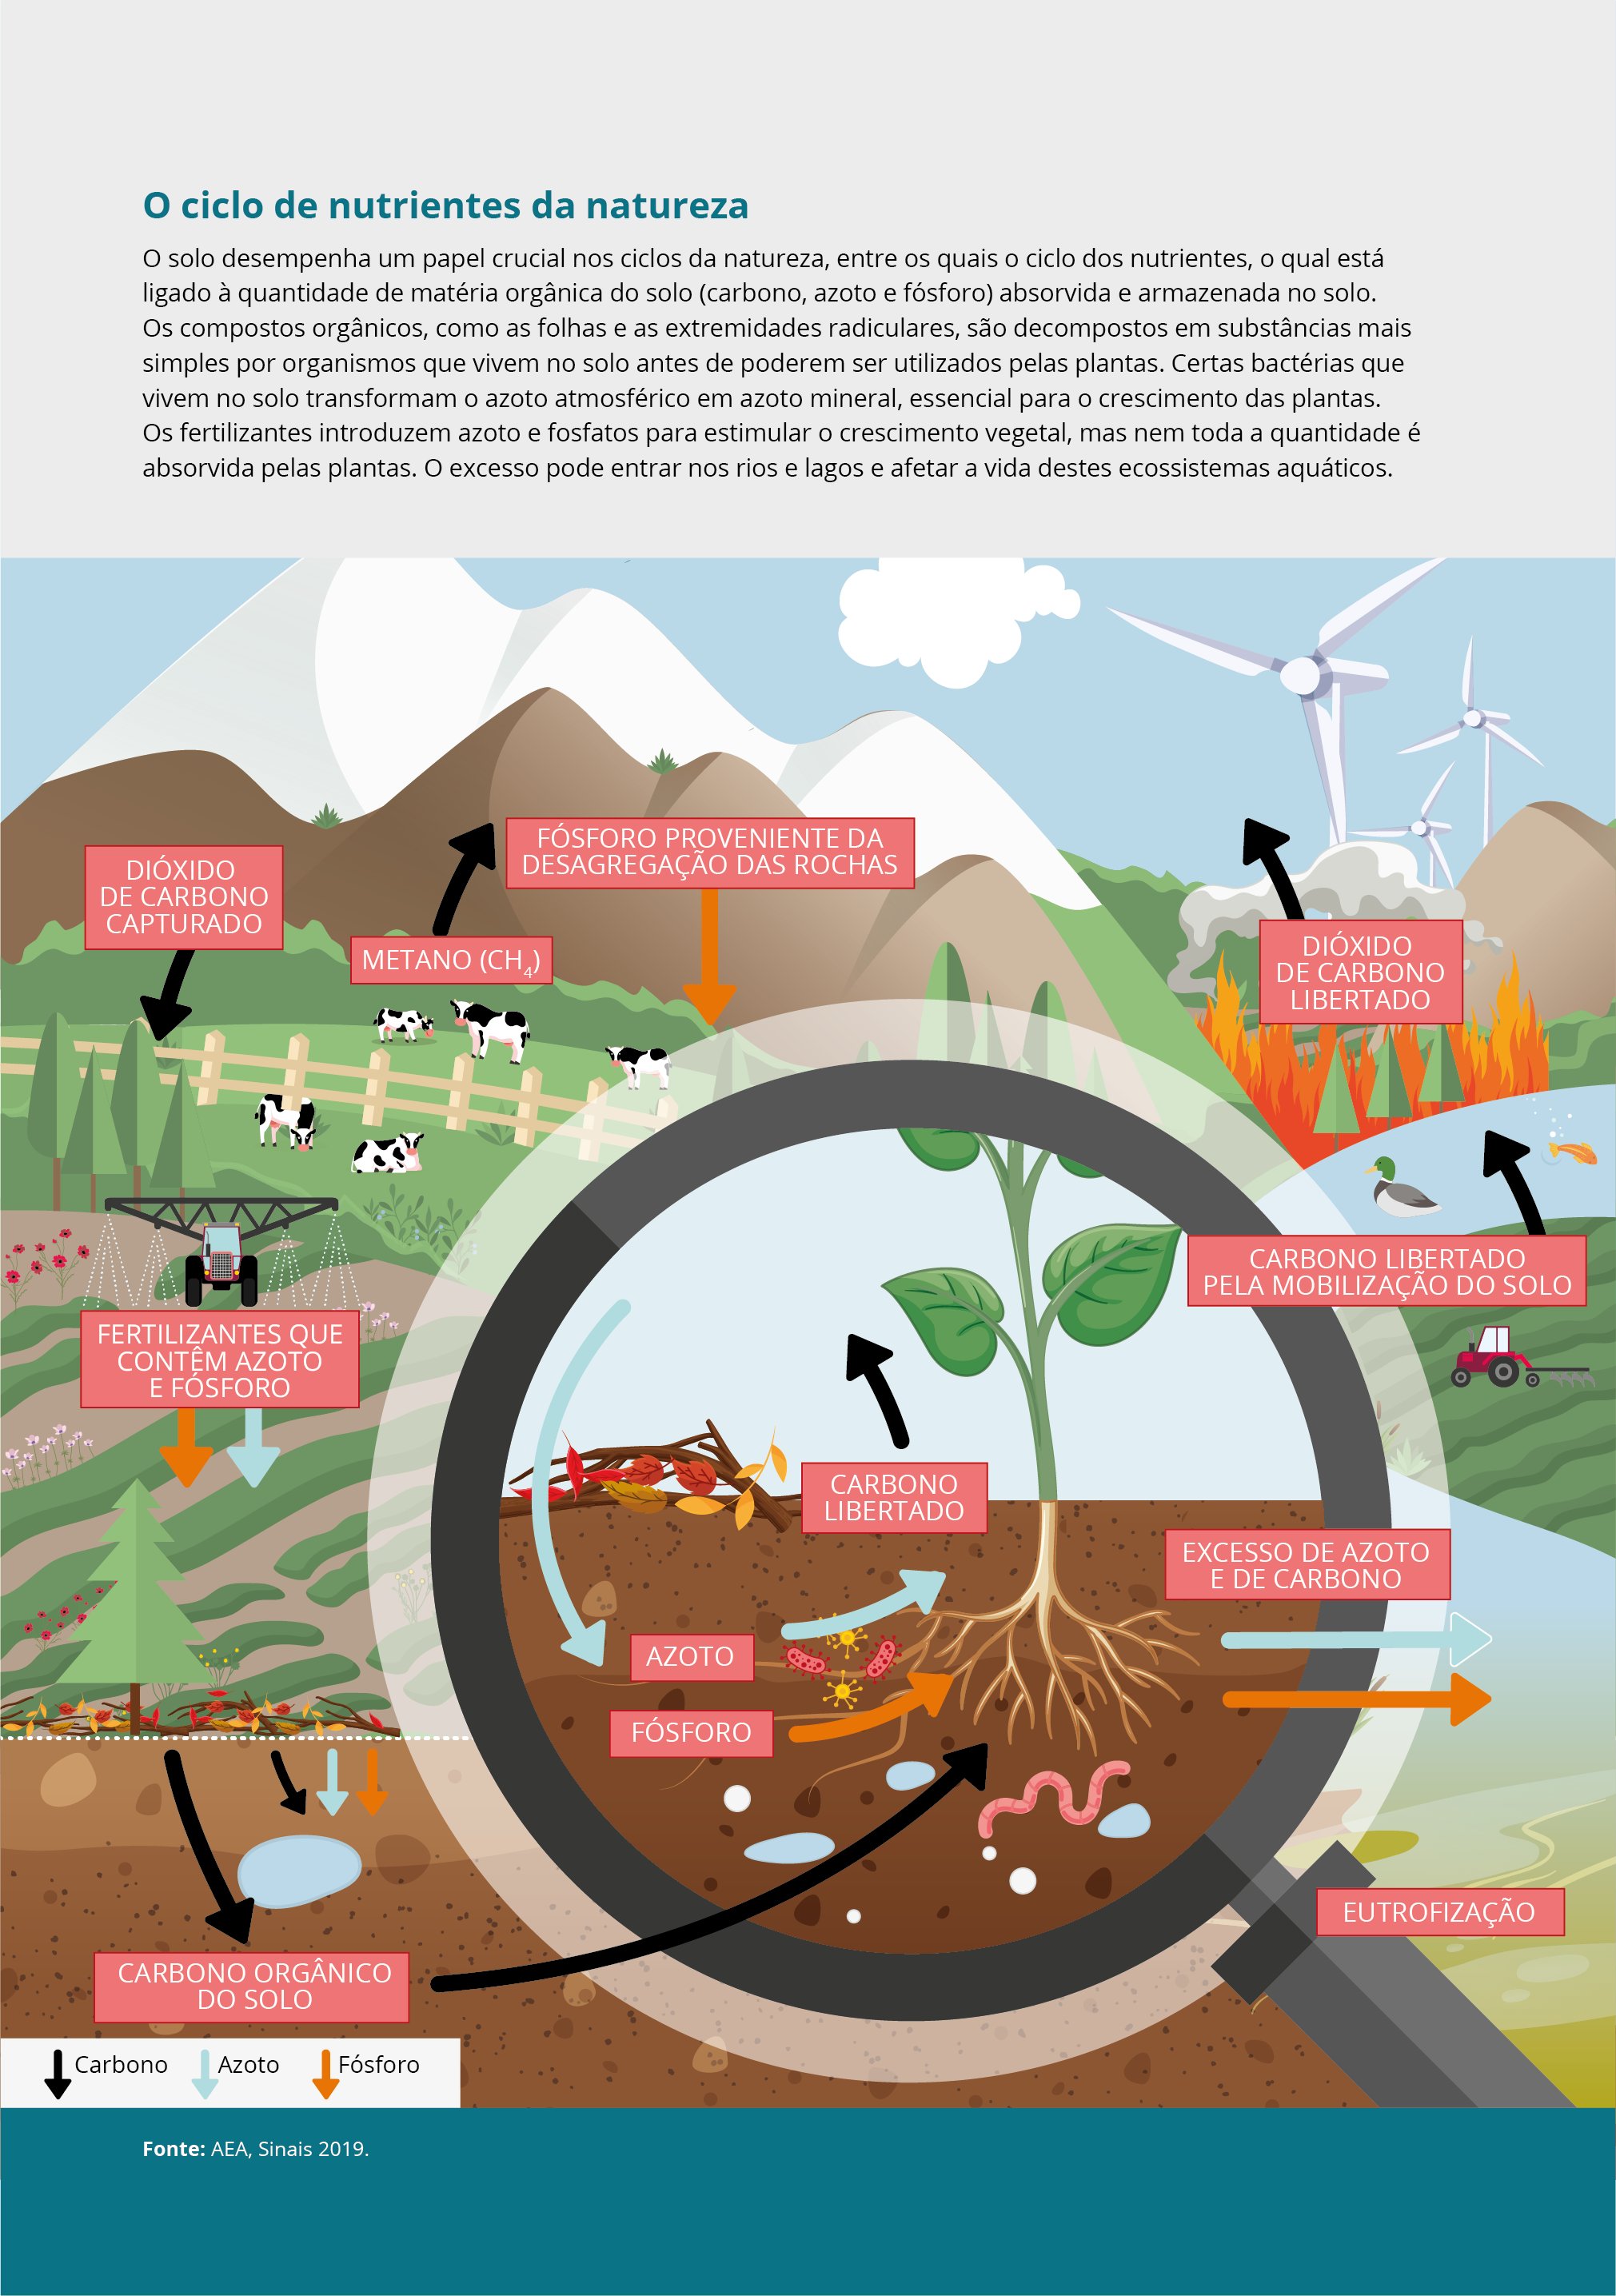 O ciclo de nutrientes da natureza